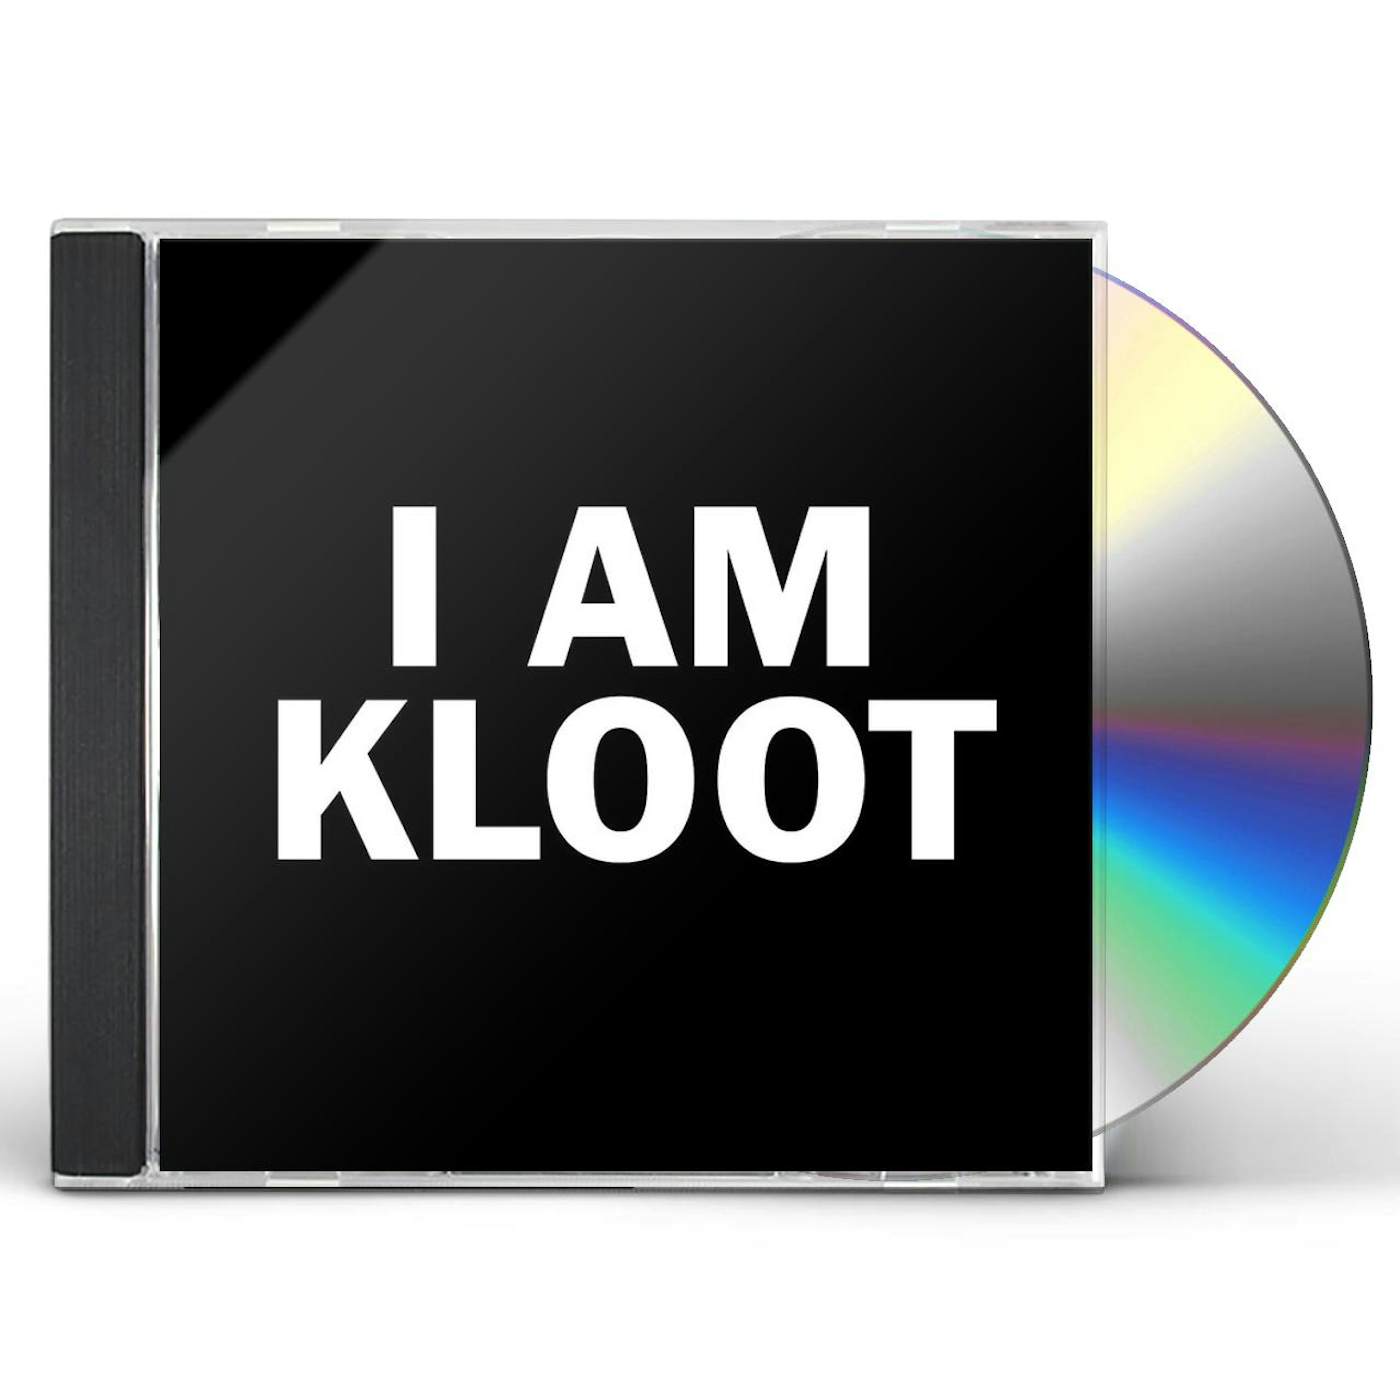 I AM KLOOT CD